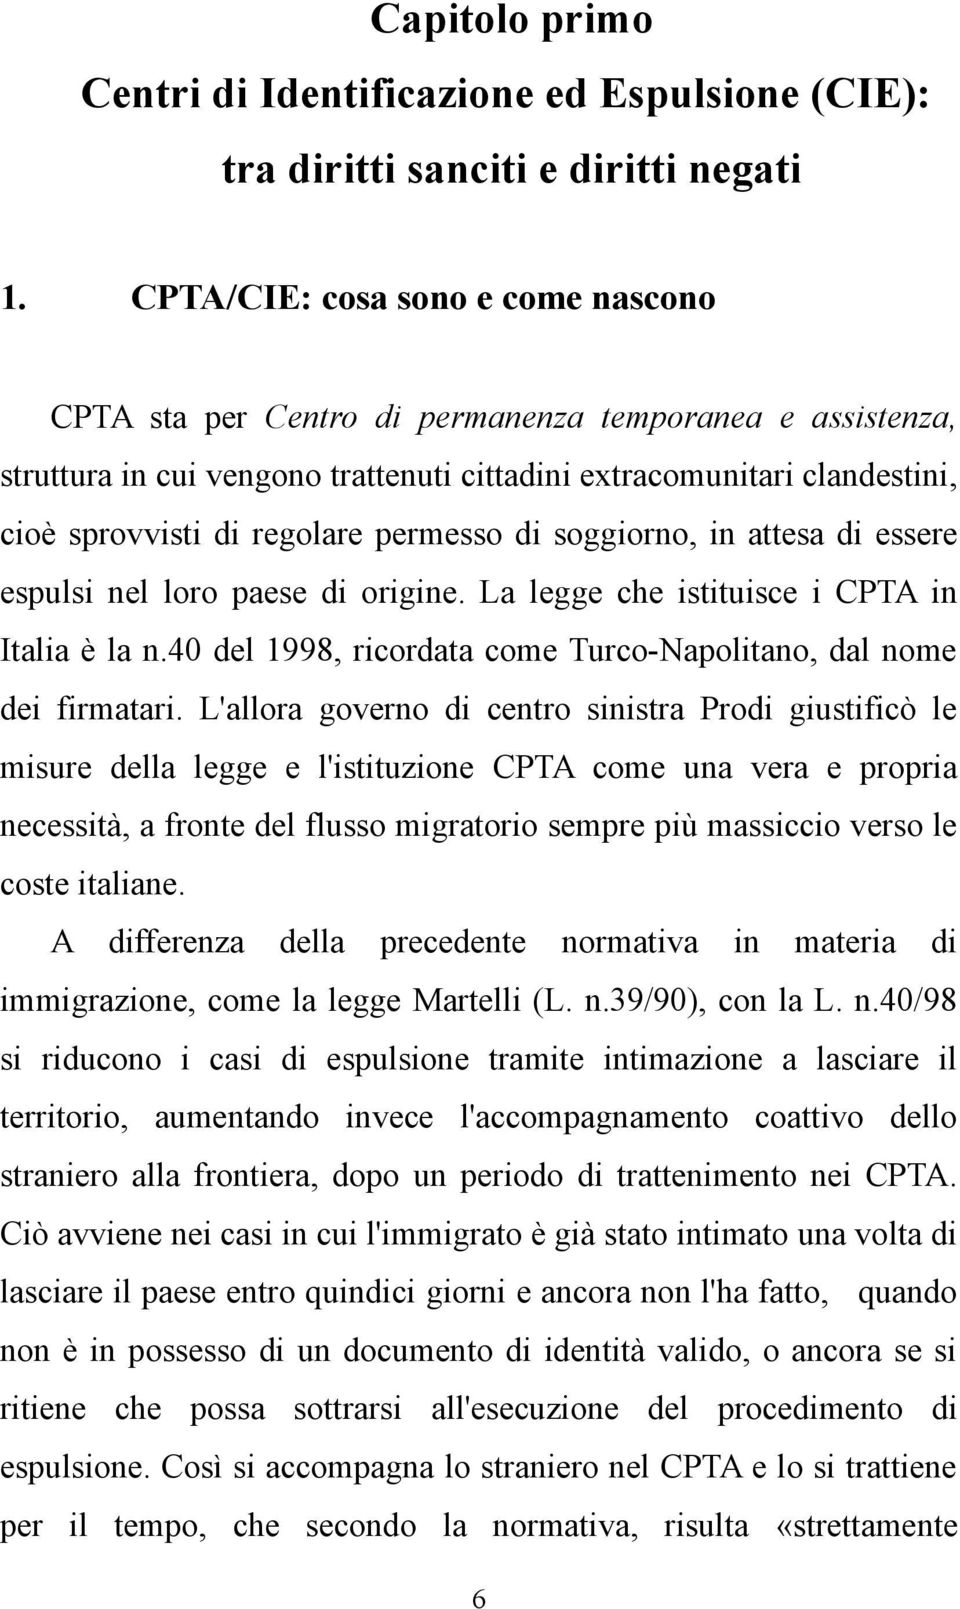 permesso di soggiorno, in attesa di essere espulsi nel loro paese di origine. La legge che istituisce i CPTA in Italia è la n.40 del 1998, ricordata come Turco-Napolitano, dal nome dei firmatari.